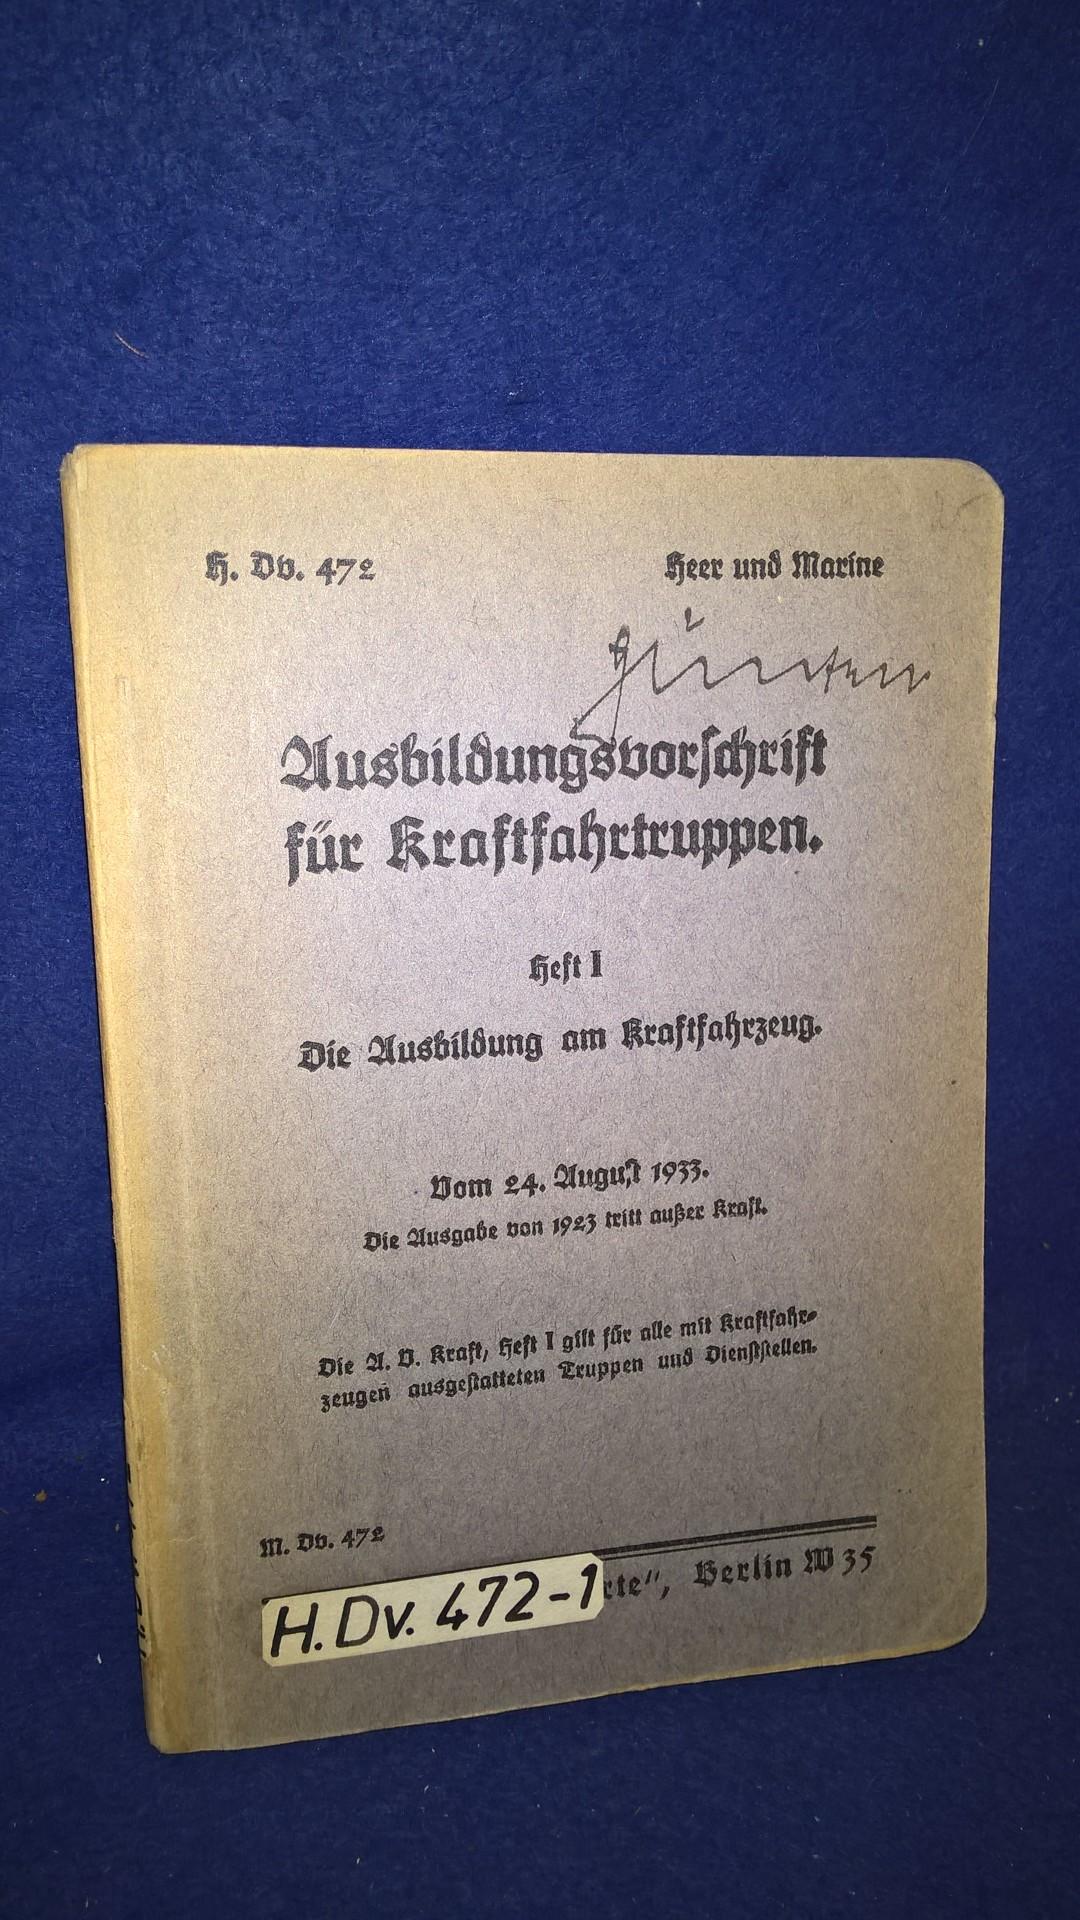 H.Dv. 472./ Heer und Marine. Ausbildungsvorschrift für Kraftfahrtruppen. Heft 1: Die Ausbildung am Kraftfahrzeug. Vom 24.August 1933.